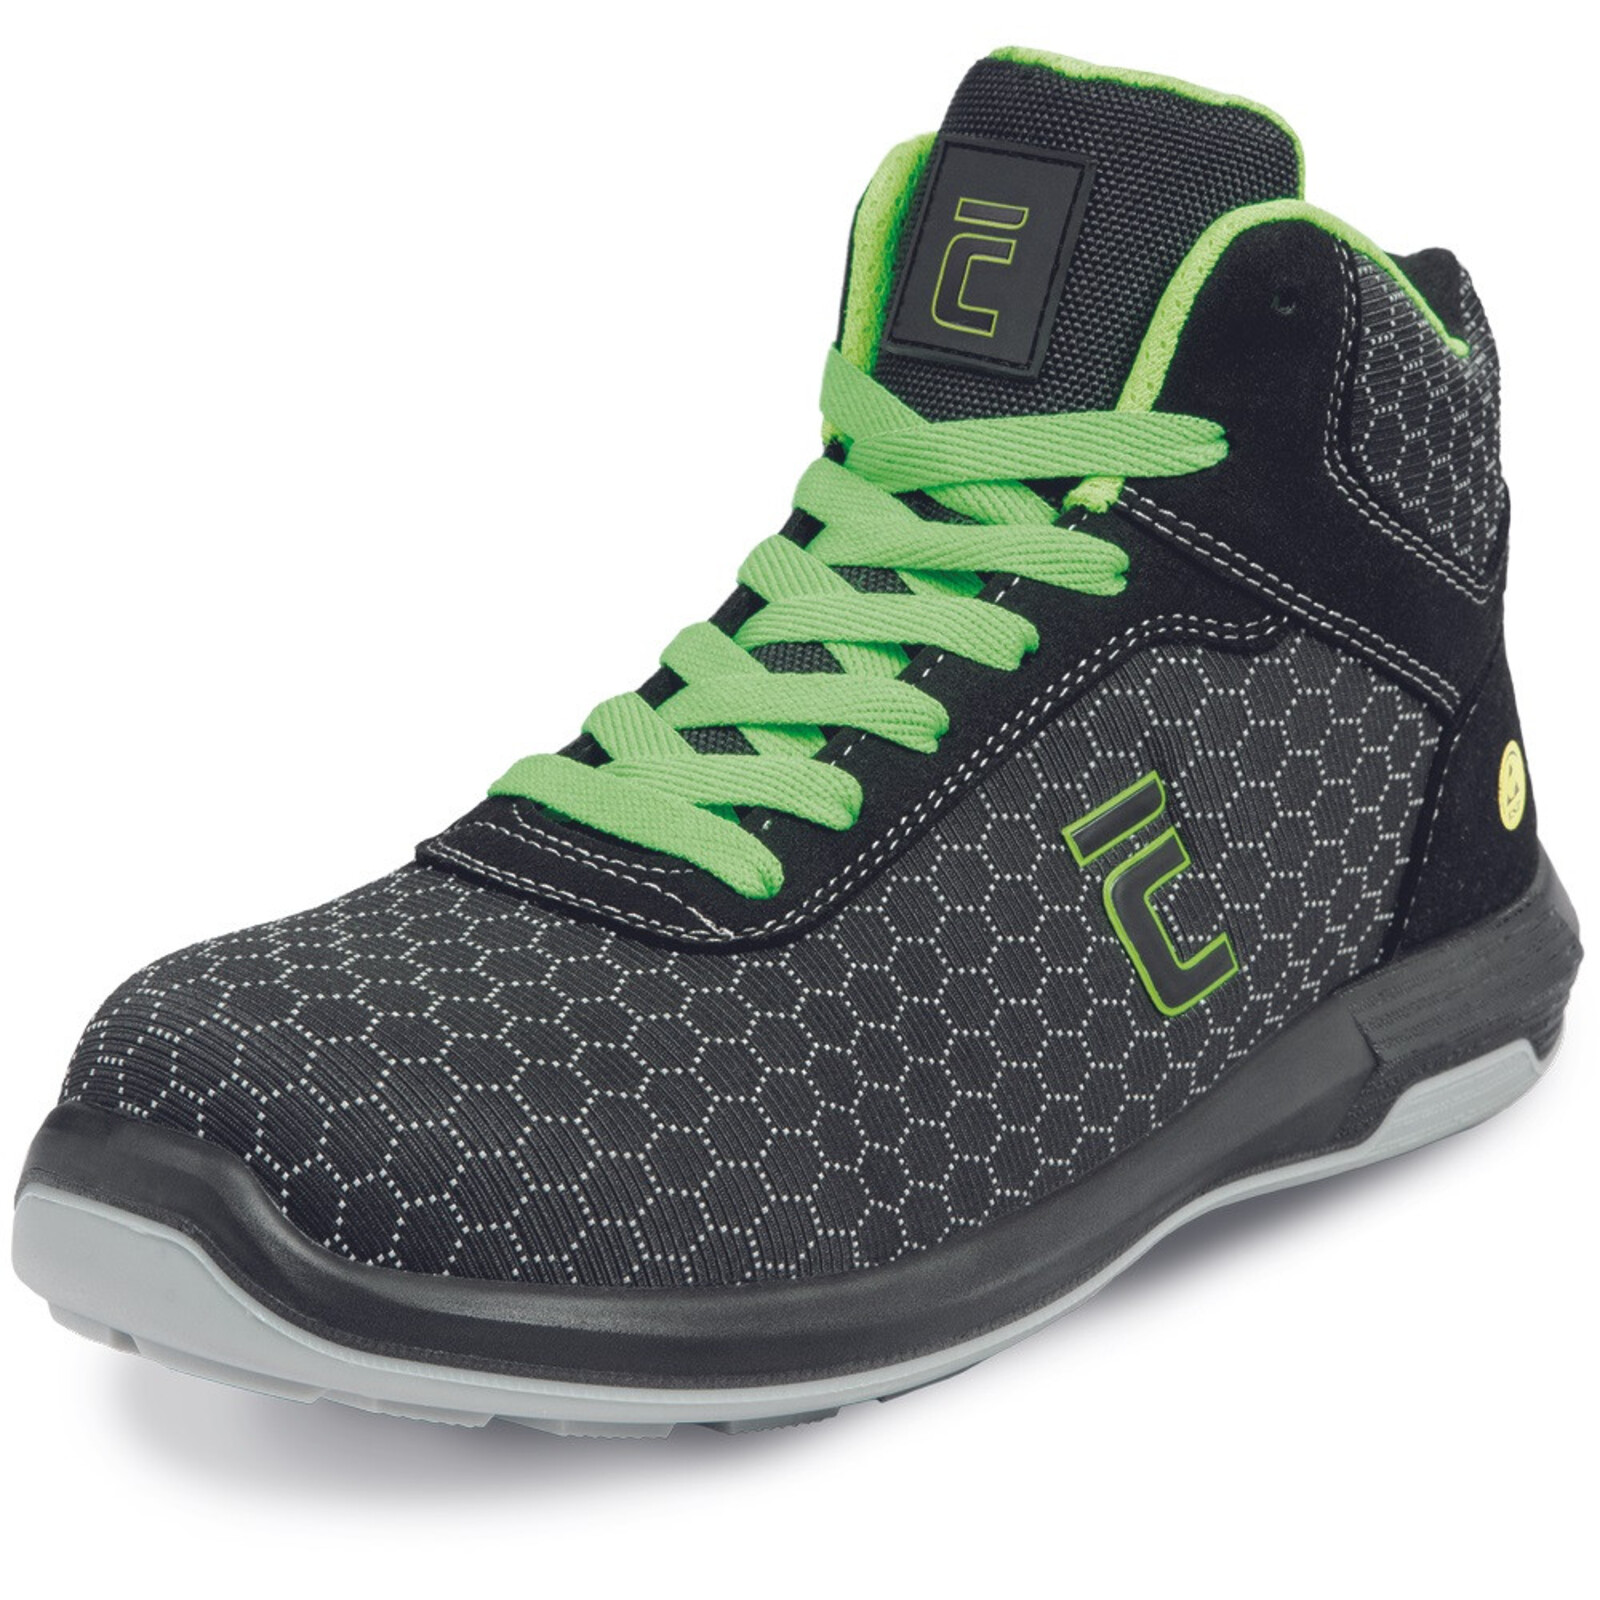 Bezpečnostná členková obuv Cerva Uttendorf MF ESD S3S SR - veľkosť: 47, farba: čierna/zelená